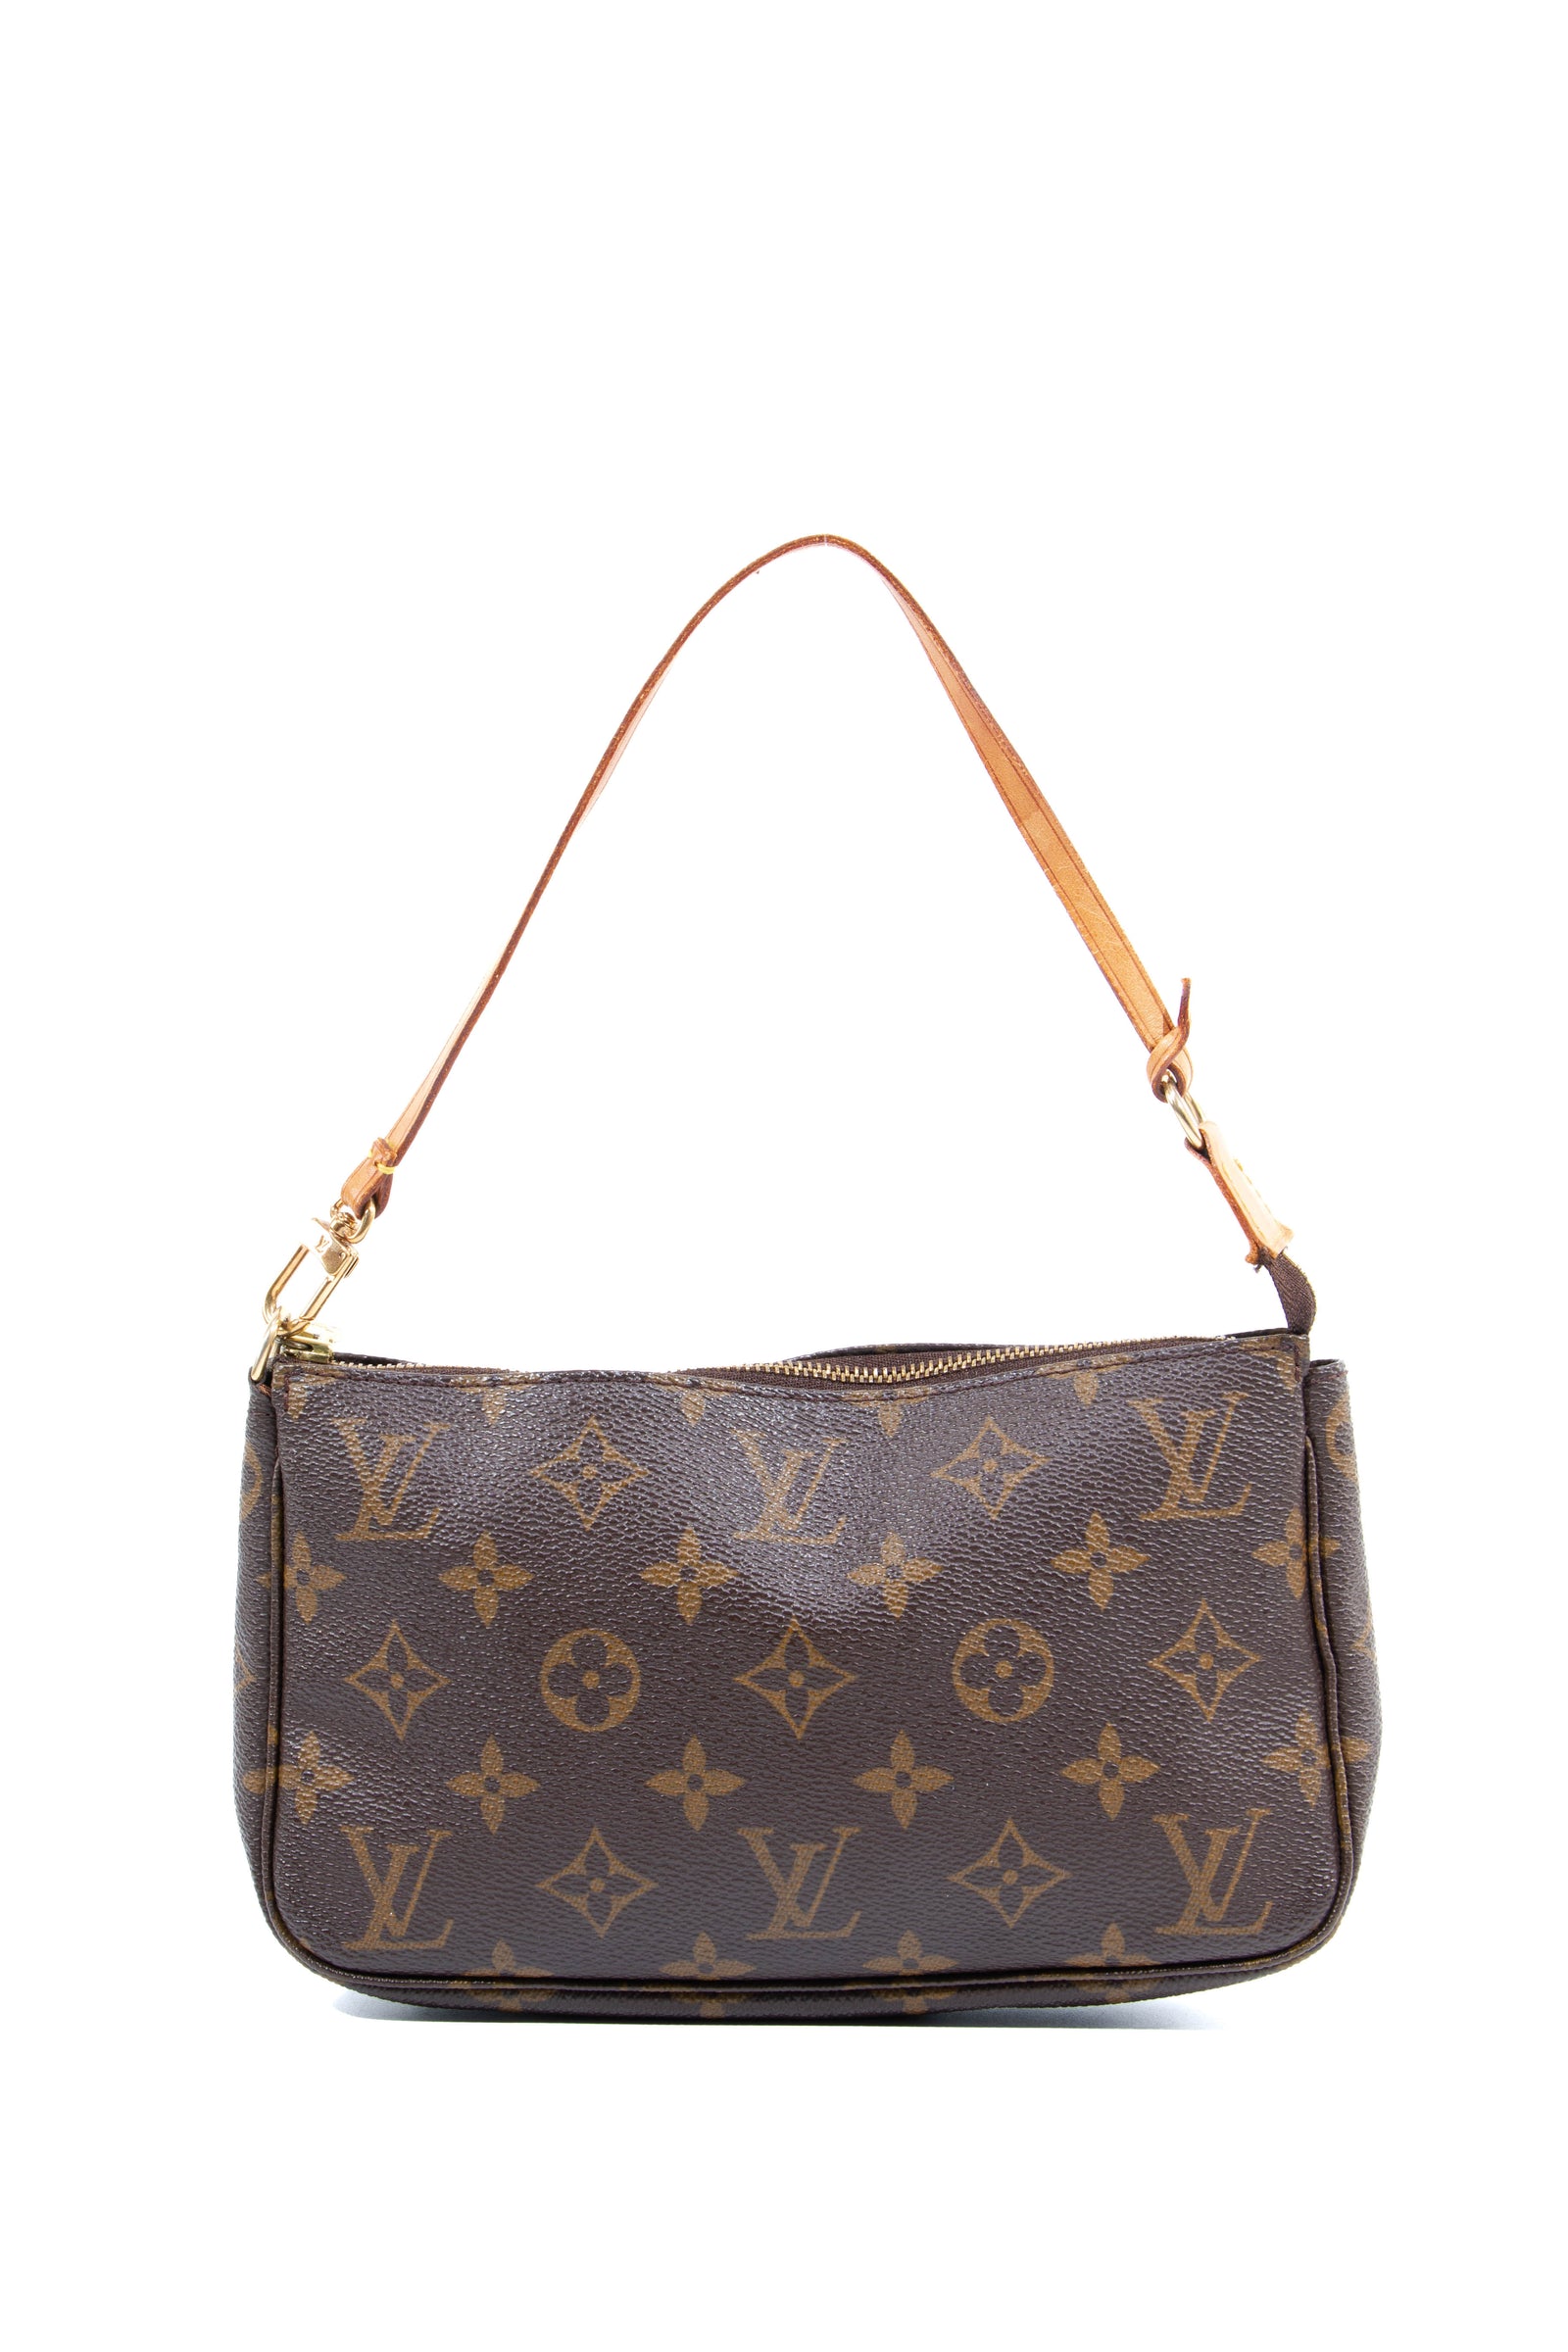 Louis Vuitton Väskor - Köp din nästa Louis Vuitton Väska på